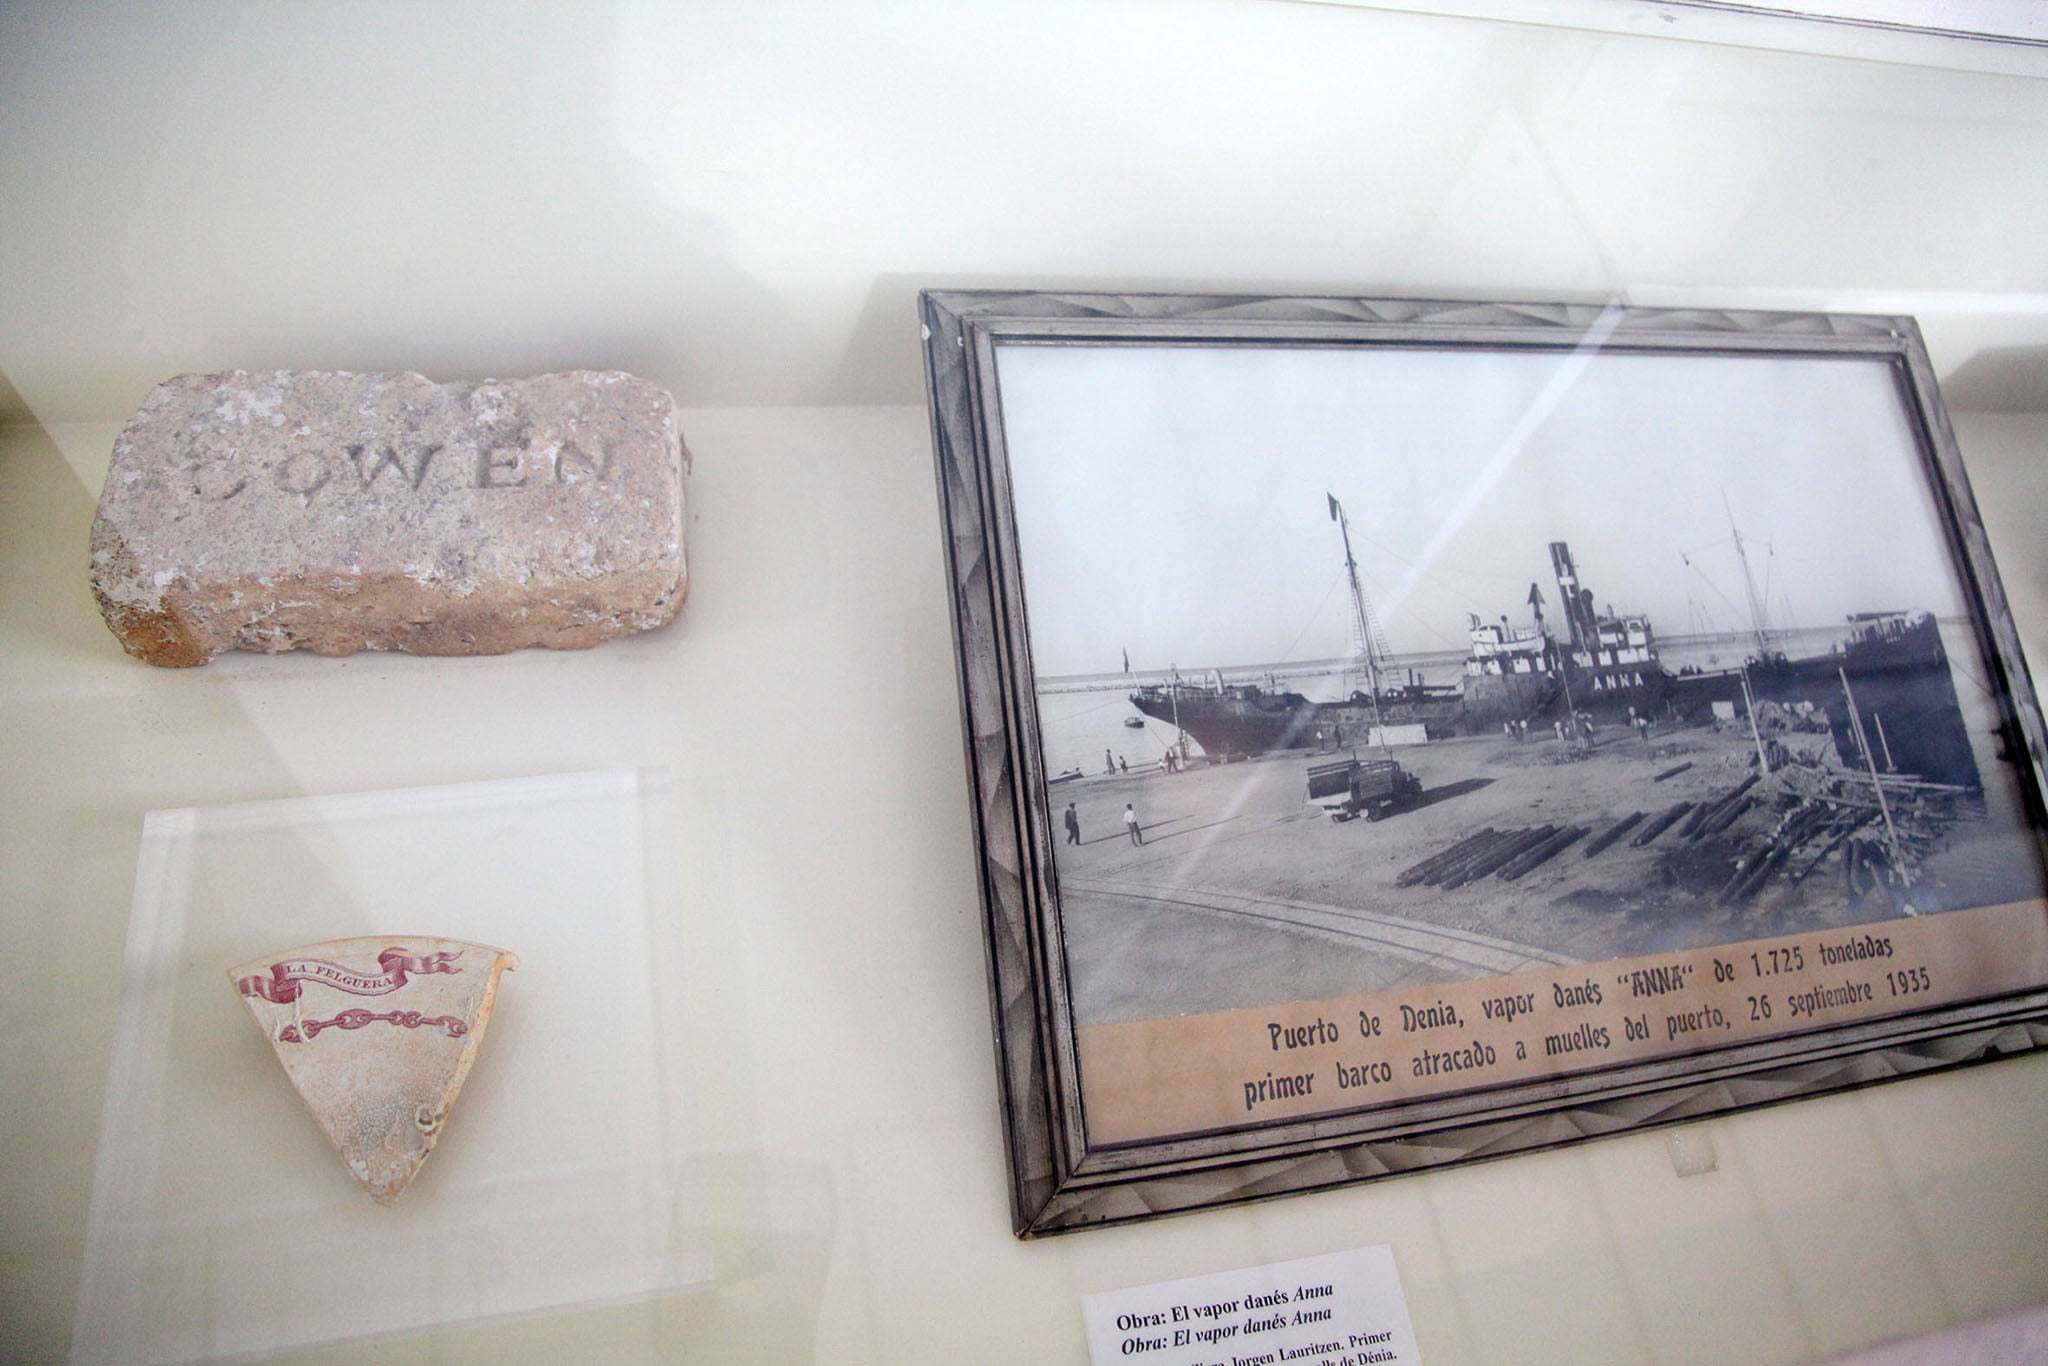 A la derecha, fotografía de primer barco en amarrar en los nuevos muelles de Dénia en 1935, y la izquierda, fragmento de plato con la leyenda %22La Felguera%22